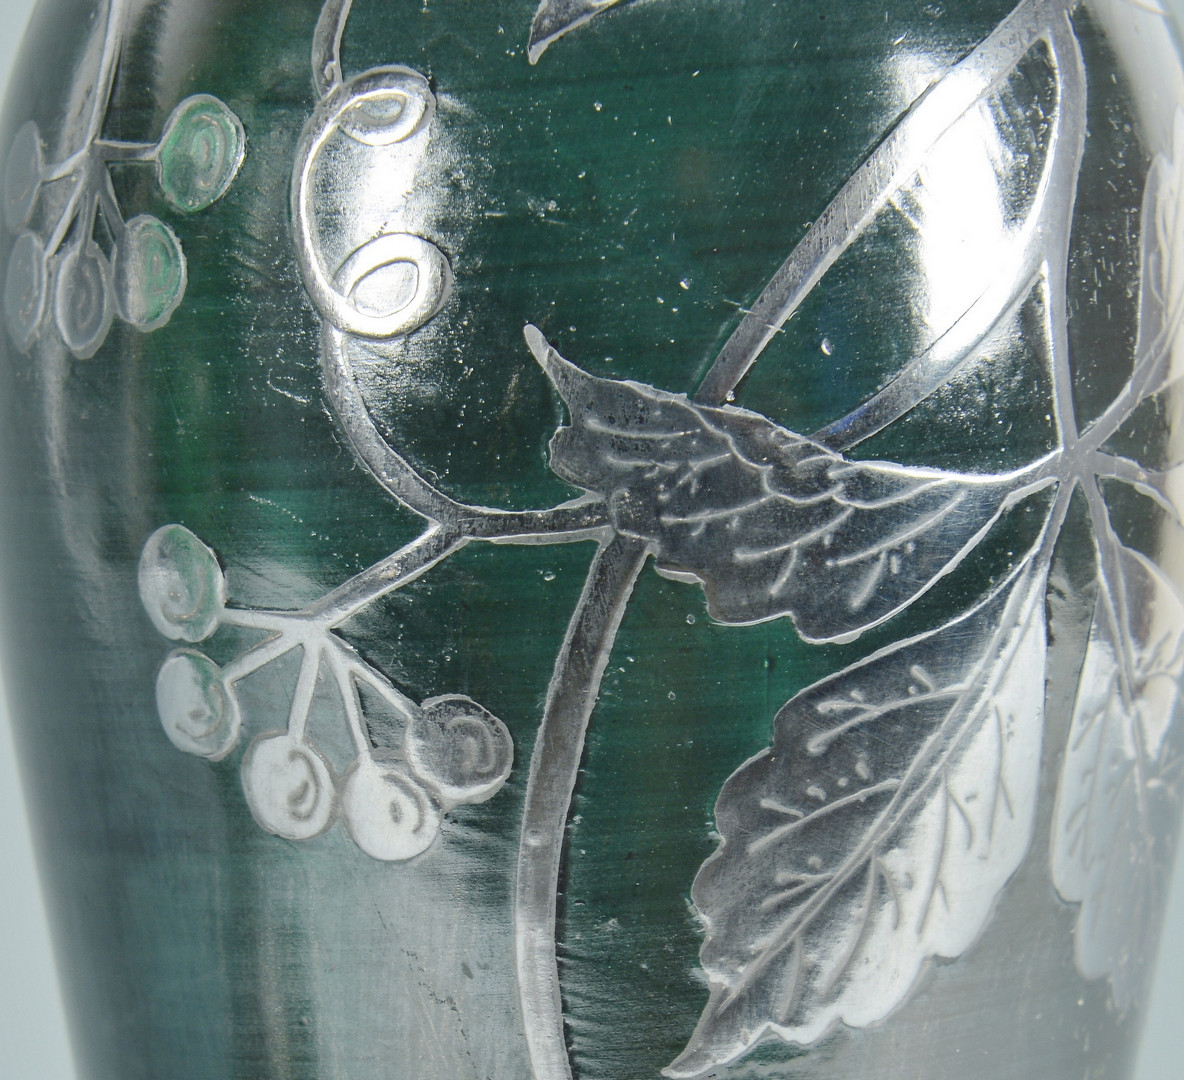 Lot 242: 2 Art Glass Vases w/ overlay